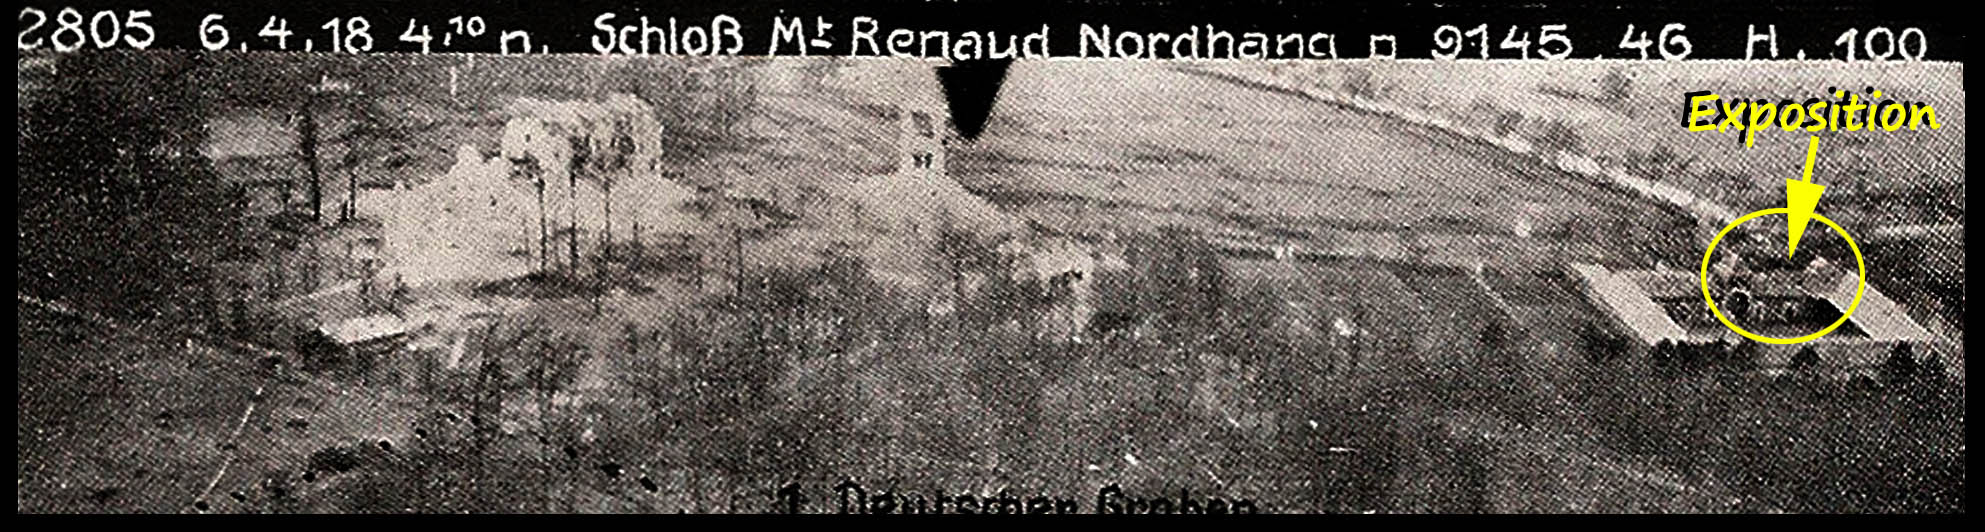 240413 - Affiche exposition au Mont Renaud (02a).jpg